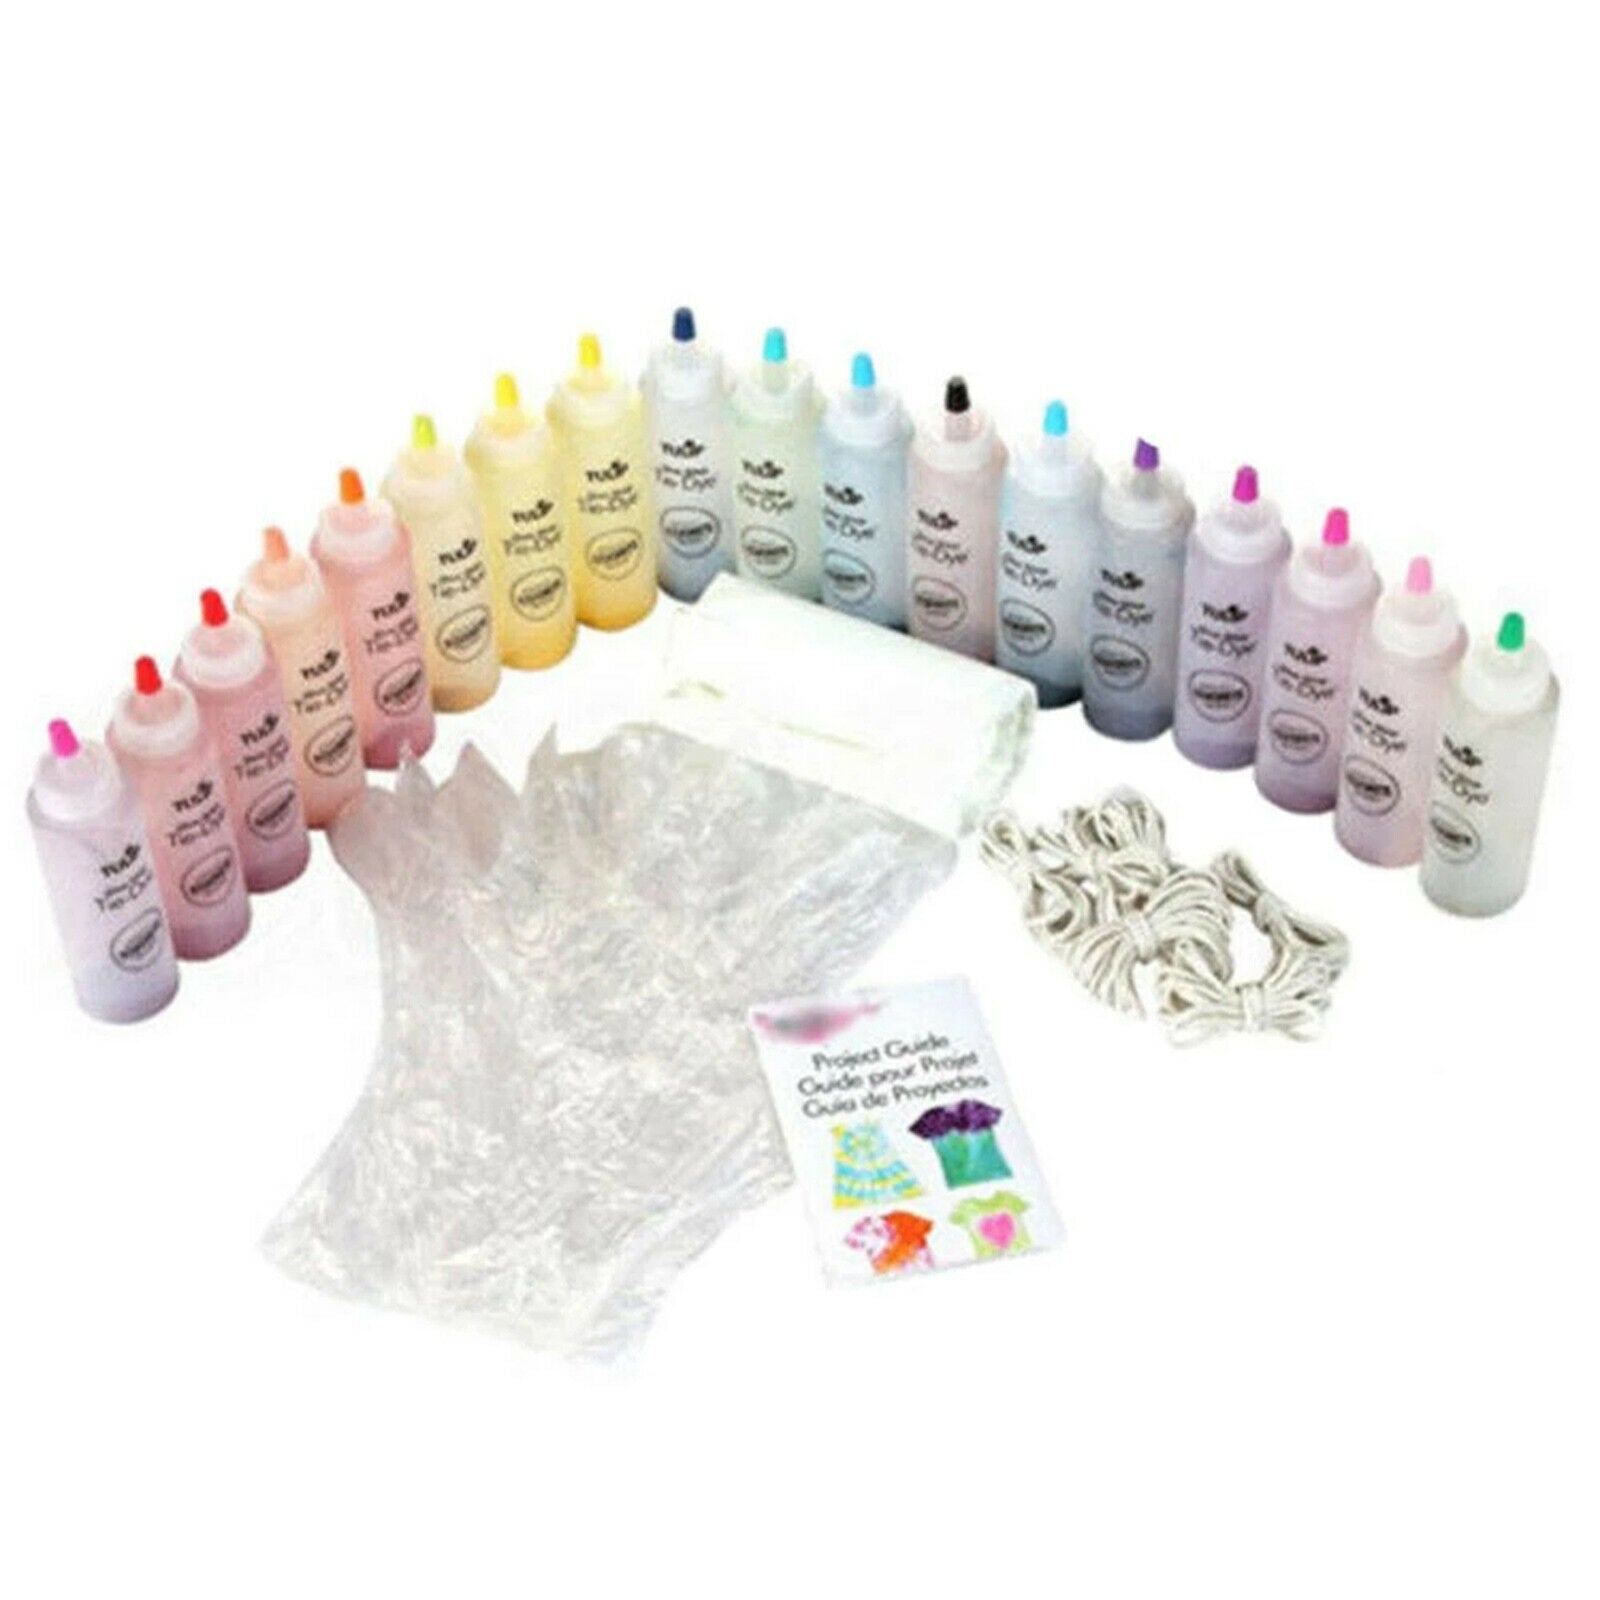 Tie Dye Kit DIY Vibrant Fabric Dye Kits Non-Toxic Dyeing T-Shirts Socks